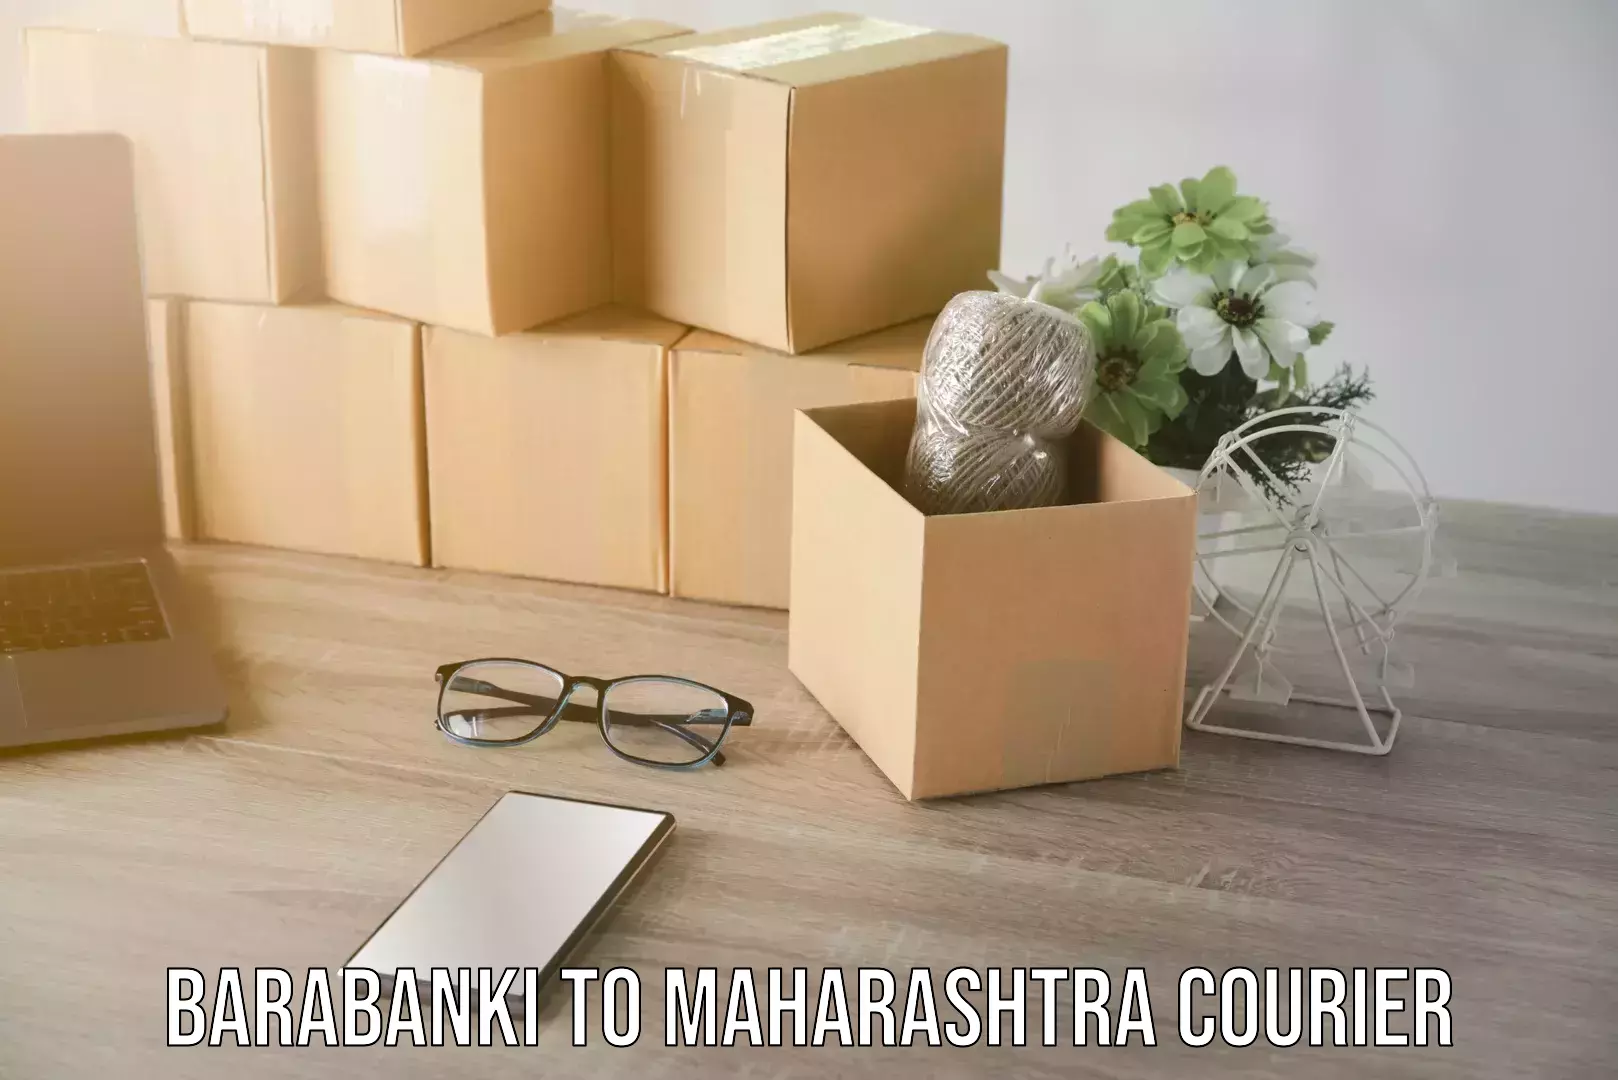 Courier service efficiency Barabanki to Maharashtra